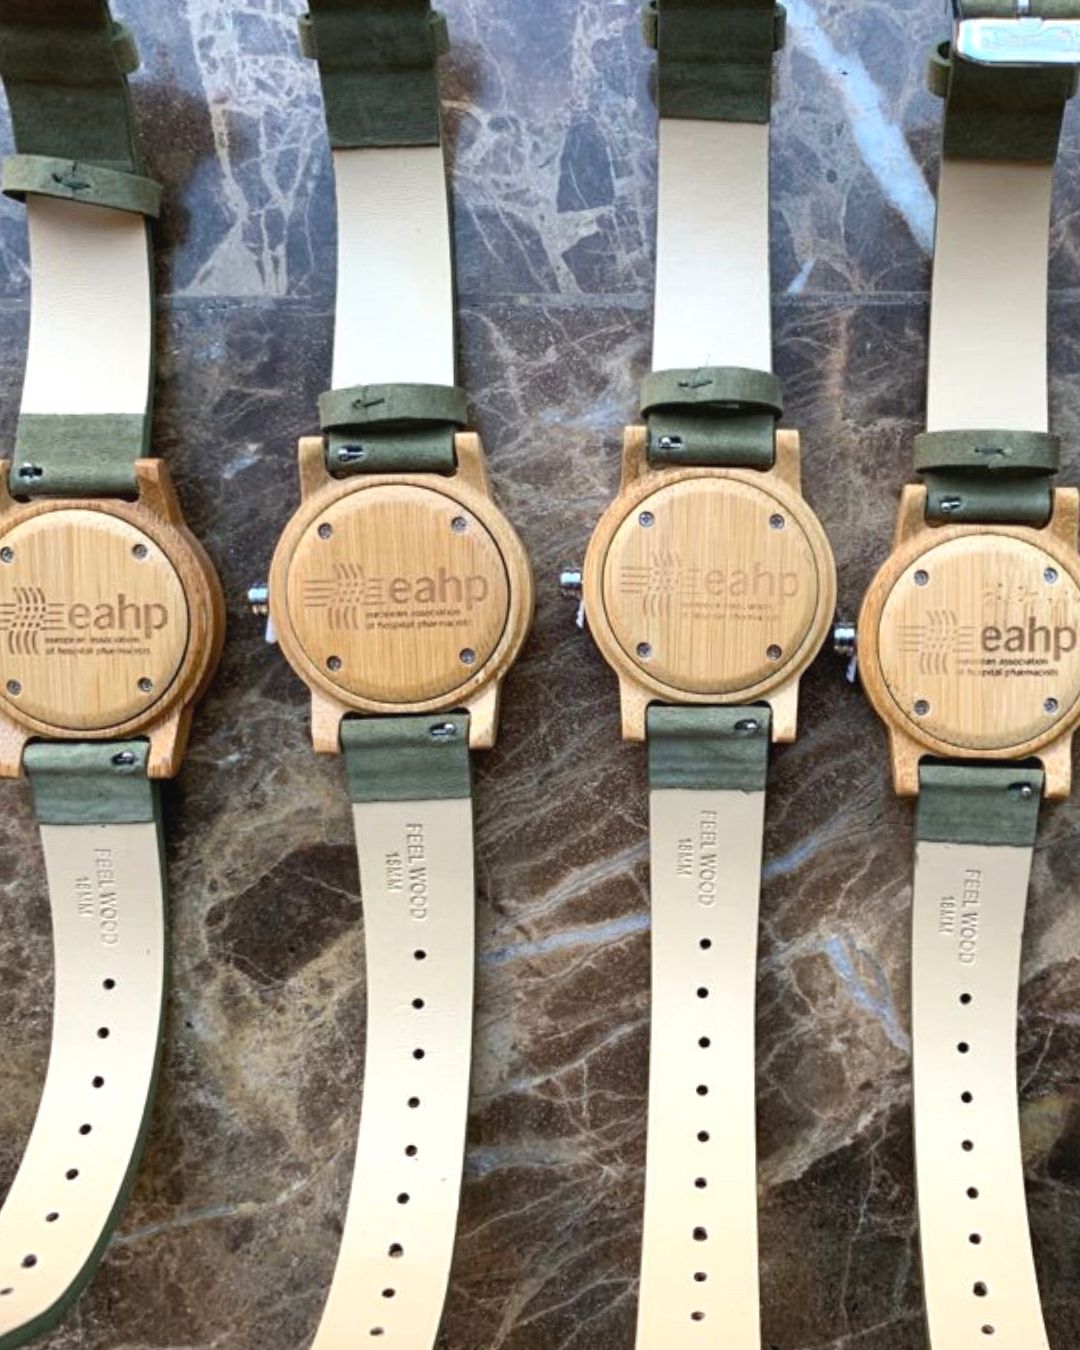 Reloj de madera de regalo para trabajadores de eahp